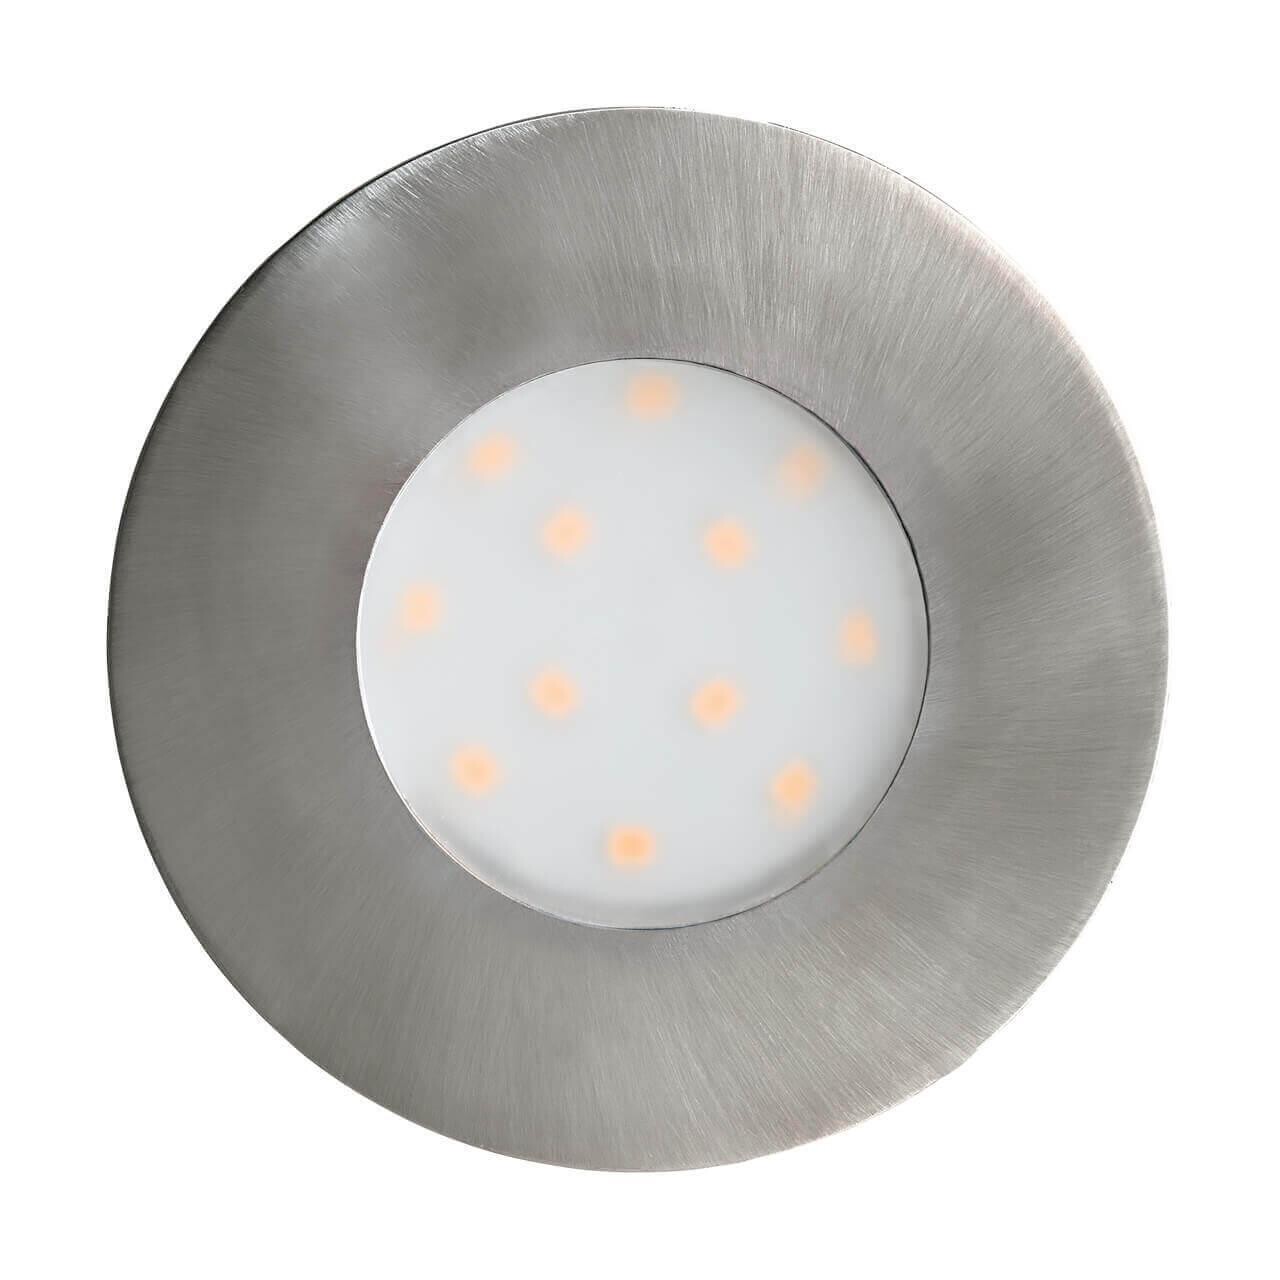 Уличный светодиодный светильник бело-серый 7,8 см Pineda-Ip 96415